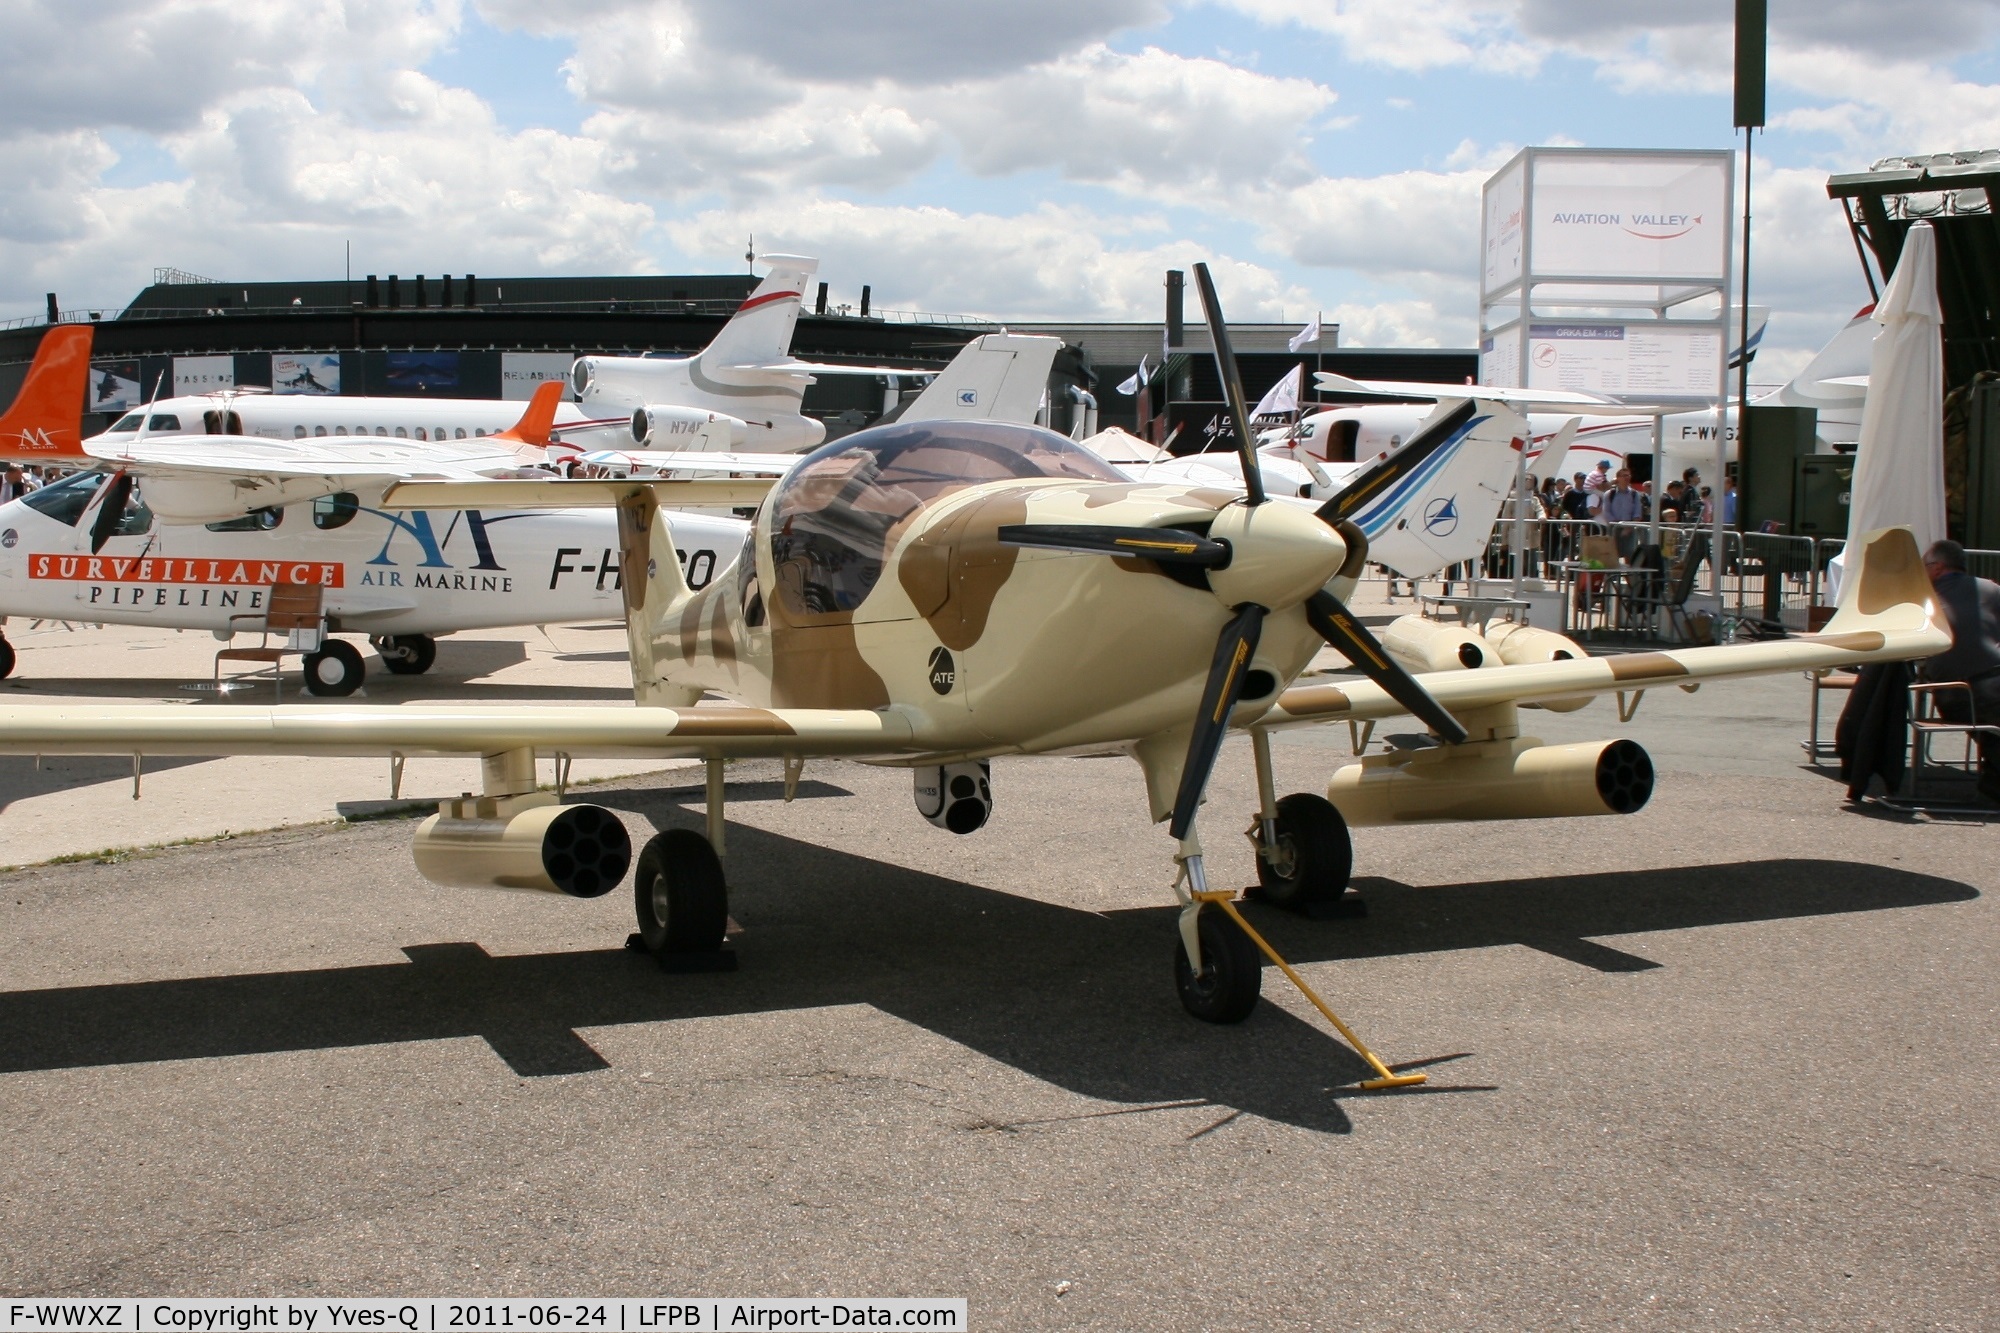 F-WWXZ, Dyn'Aero Pulsatrix C/N 001, Dyn'Aero Pulsatrix MCR R-180, Static Display, Paris Le Bourget (LFPB-LBG) Air Show 2011